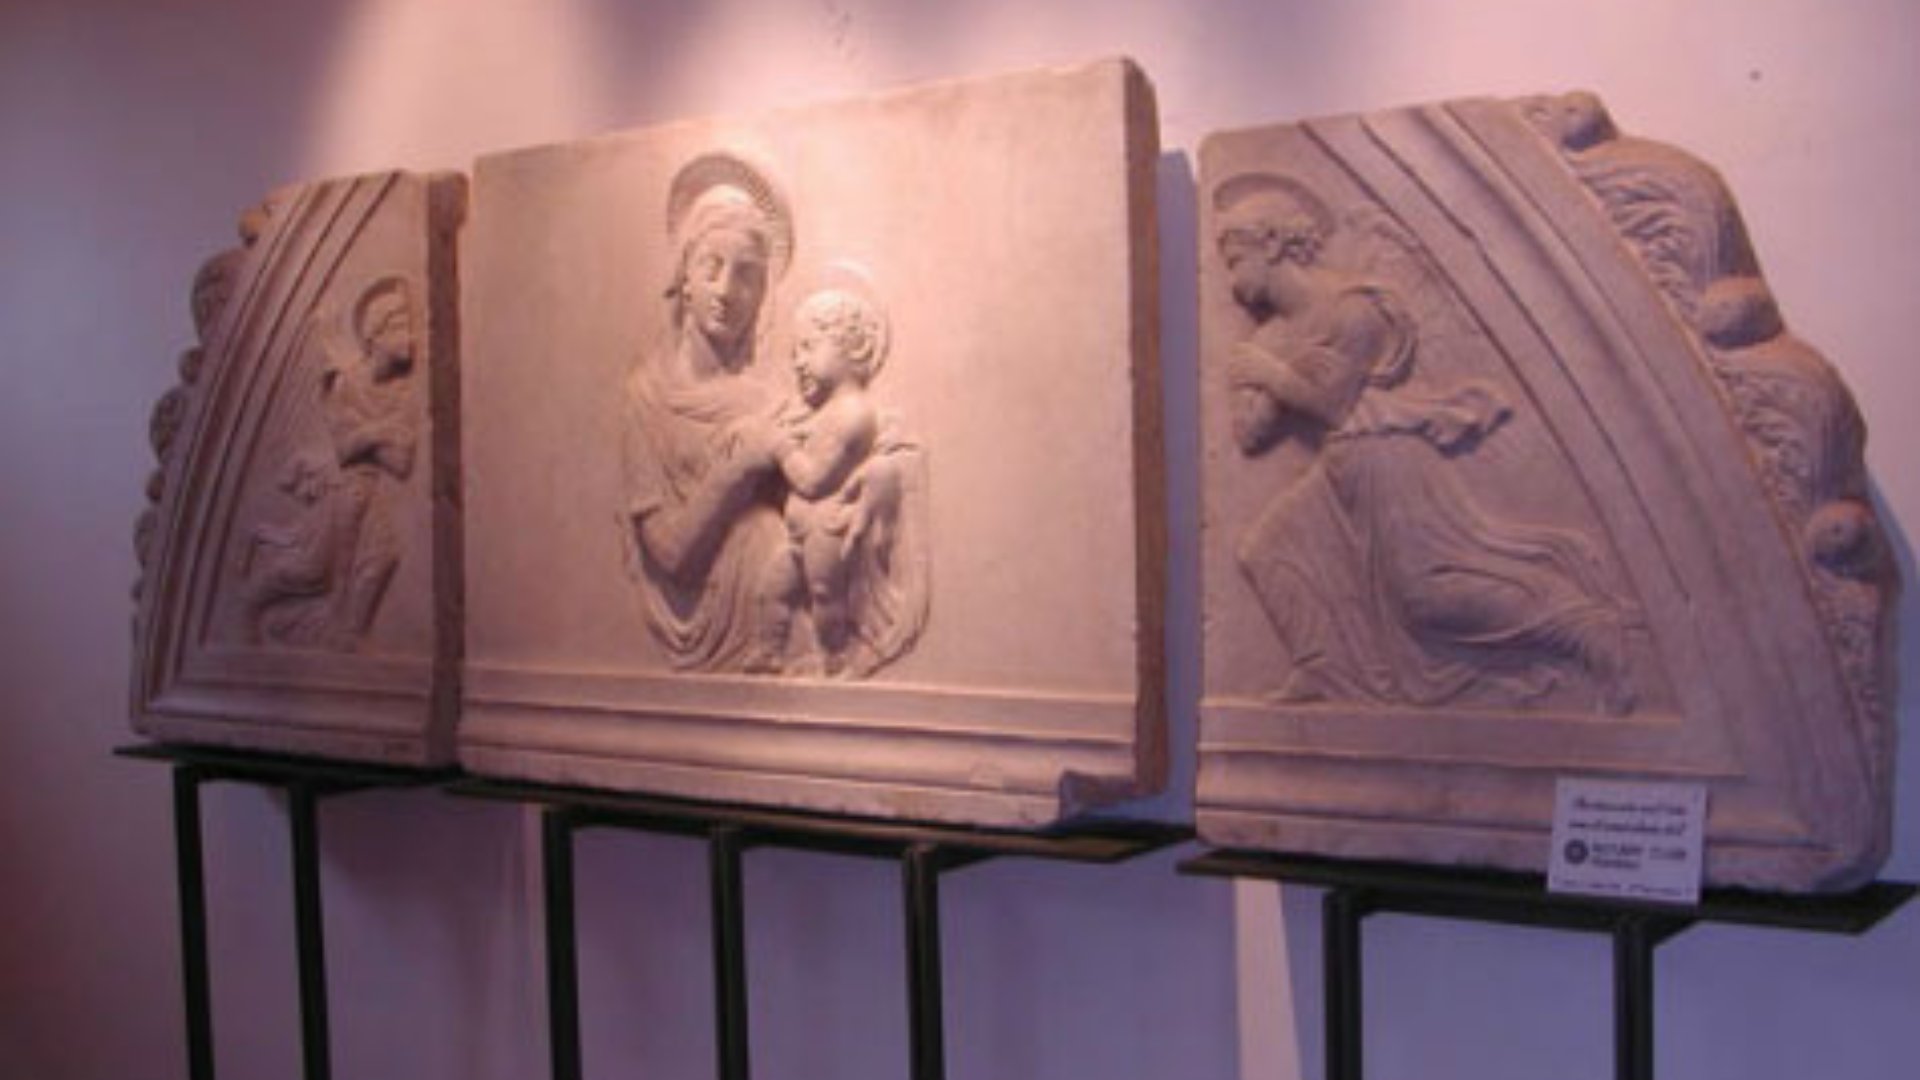 Museo Diocesano di Arte Sacra - A. Guardi - Piombino